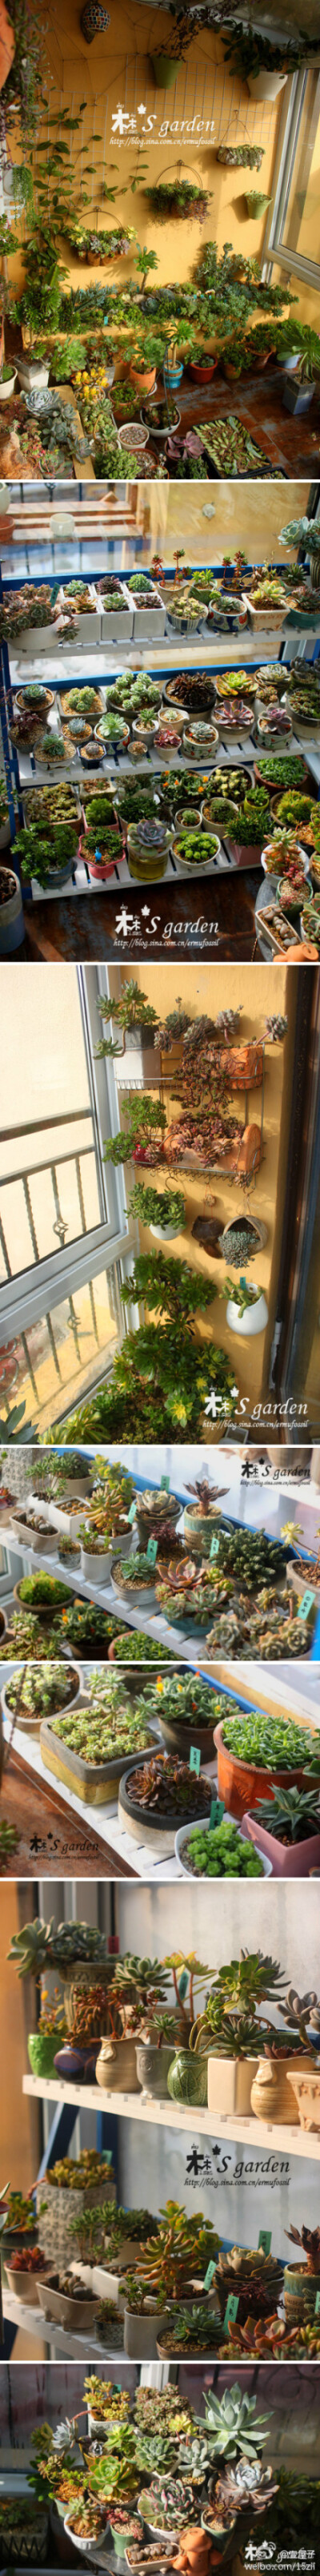 梦想的阳台一角……二木的花园-治愈系多肉可爱植物